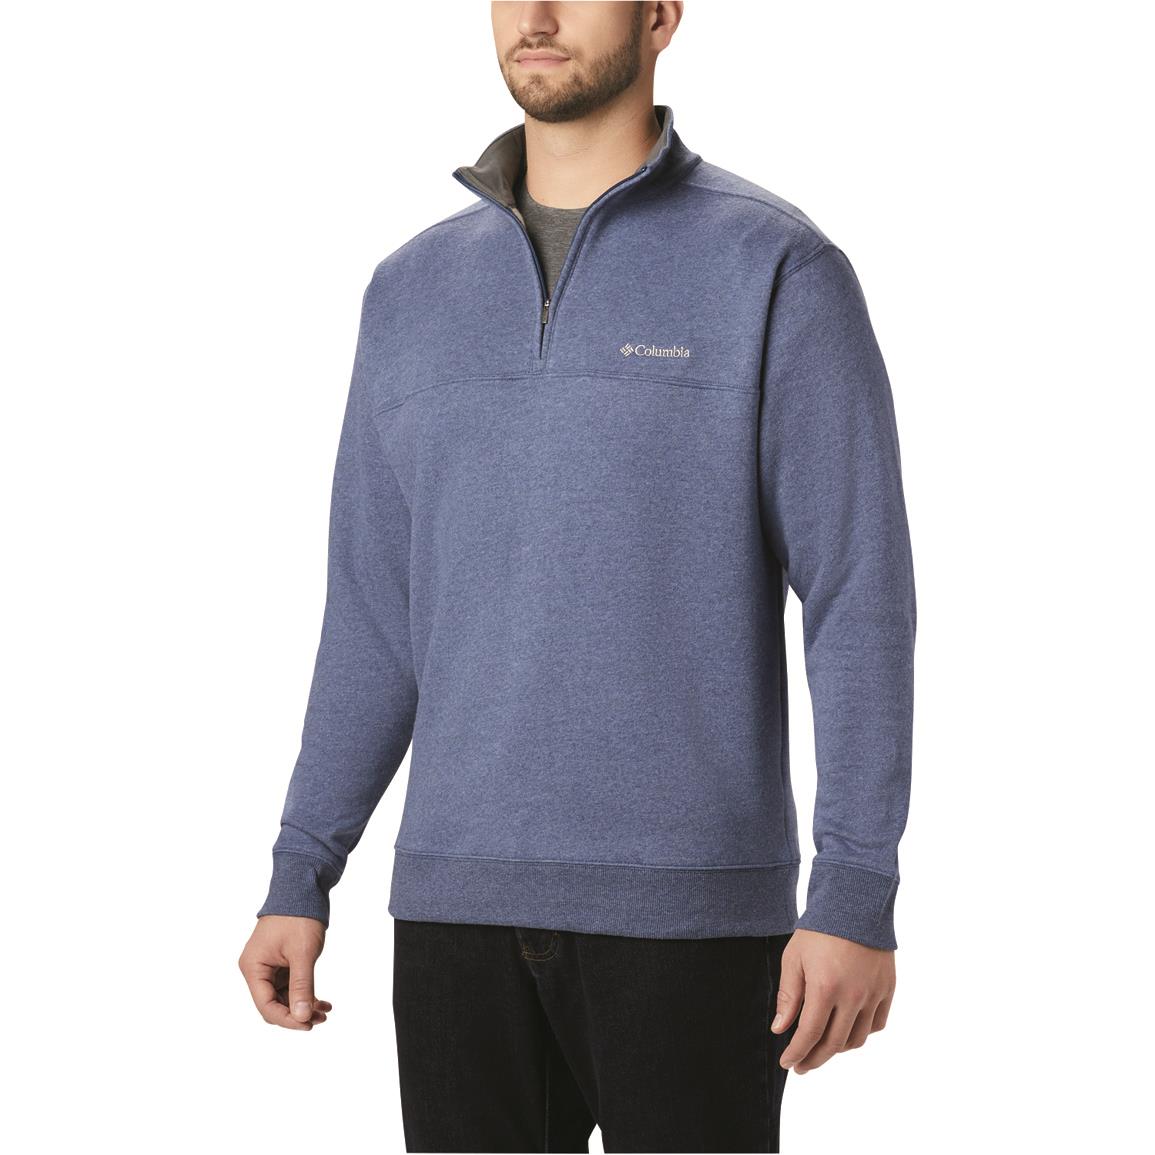 Columbia Men's Hart Mountain II Half-zip Sweatshirt, Carbon Heather